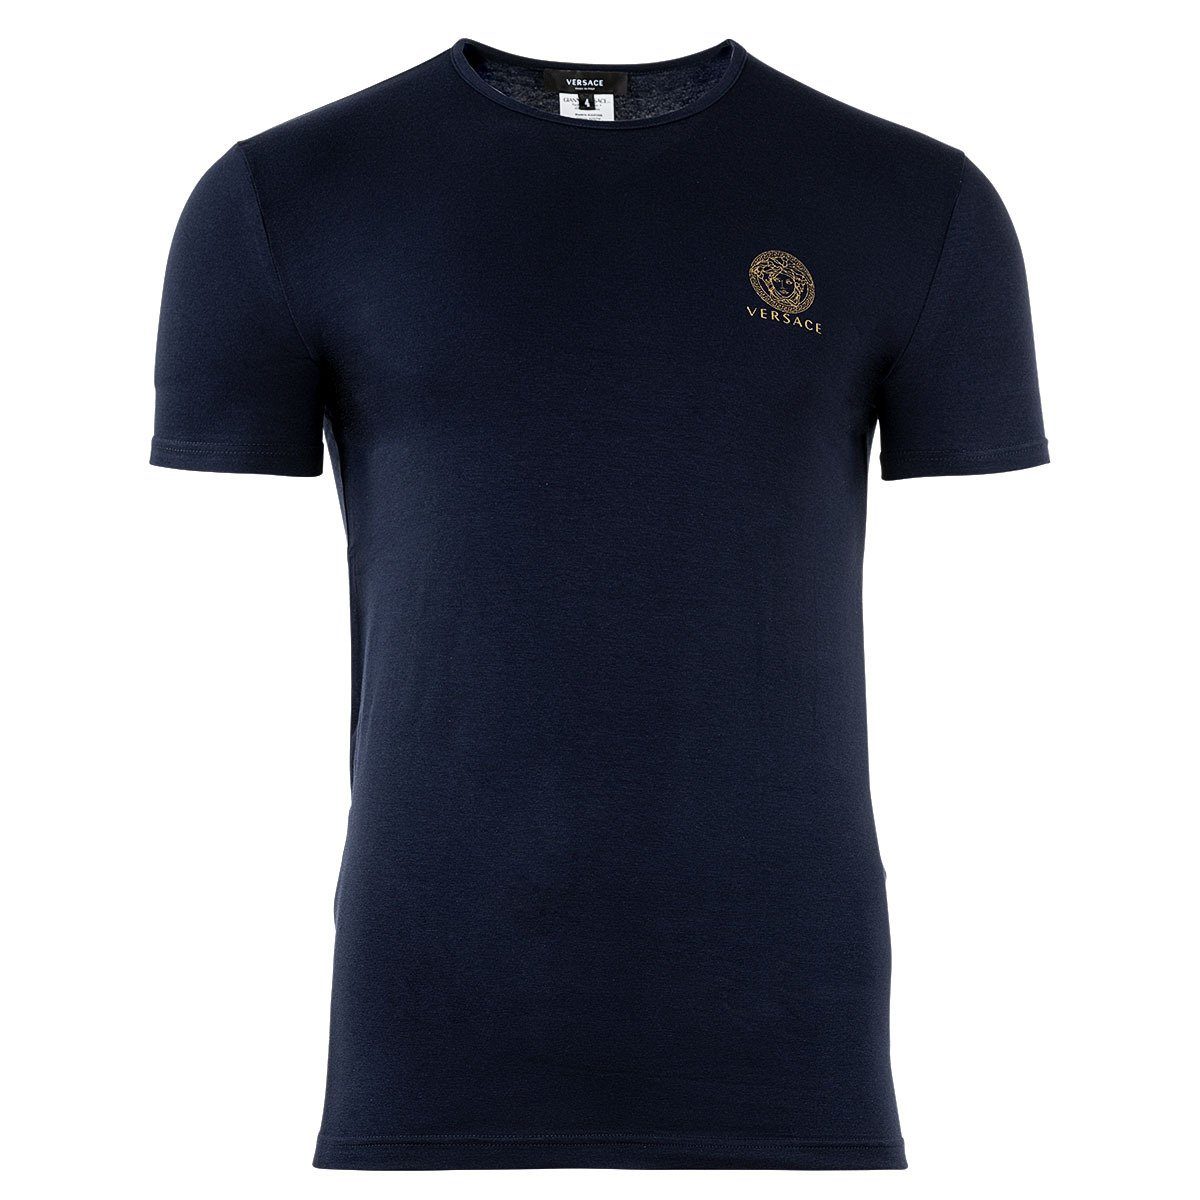 Rundhals, Versace Stretch T-Shirt Herren Unterhemd, T-Shirt Blau -